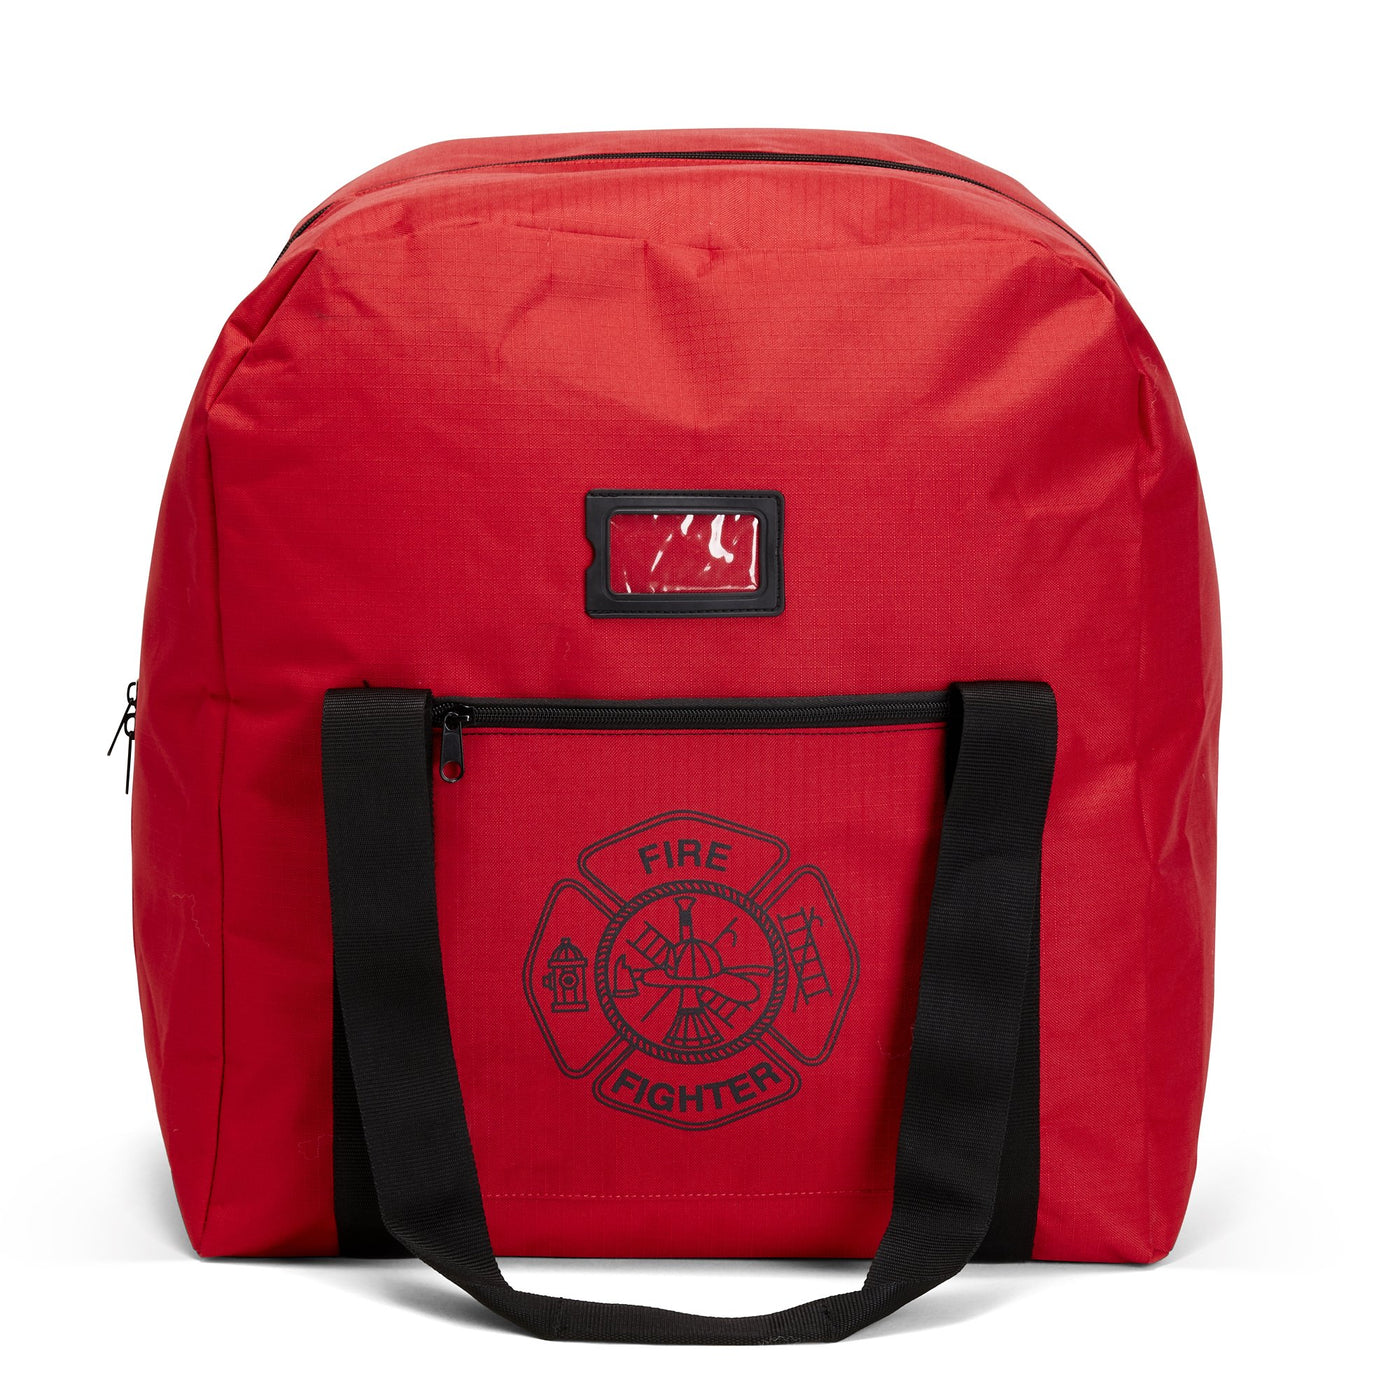 LINE2design Firefighter Gear Bags 